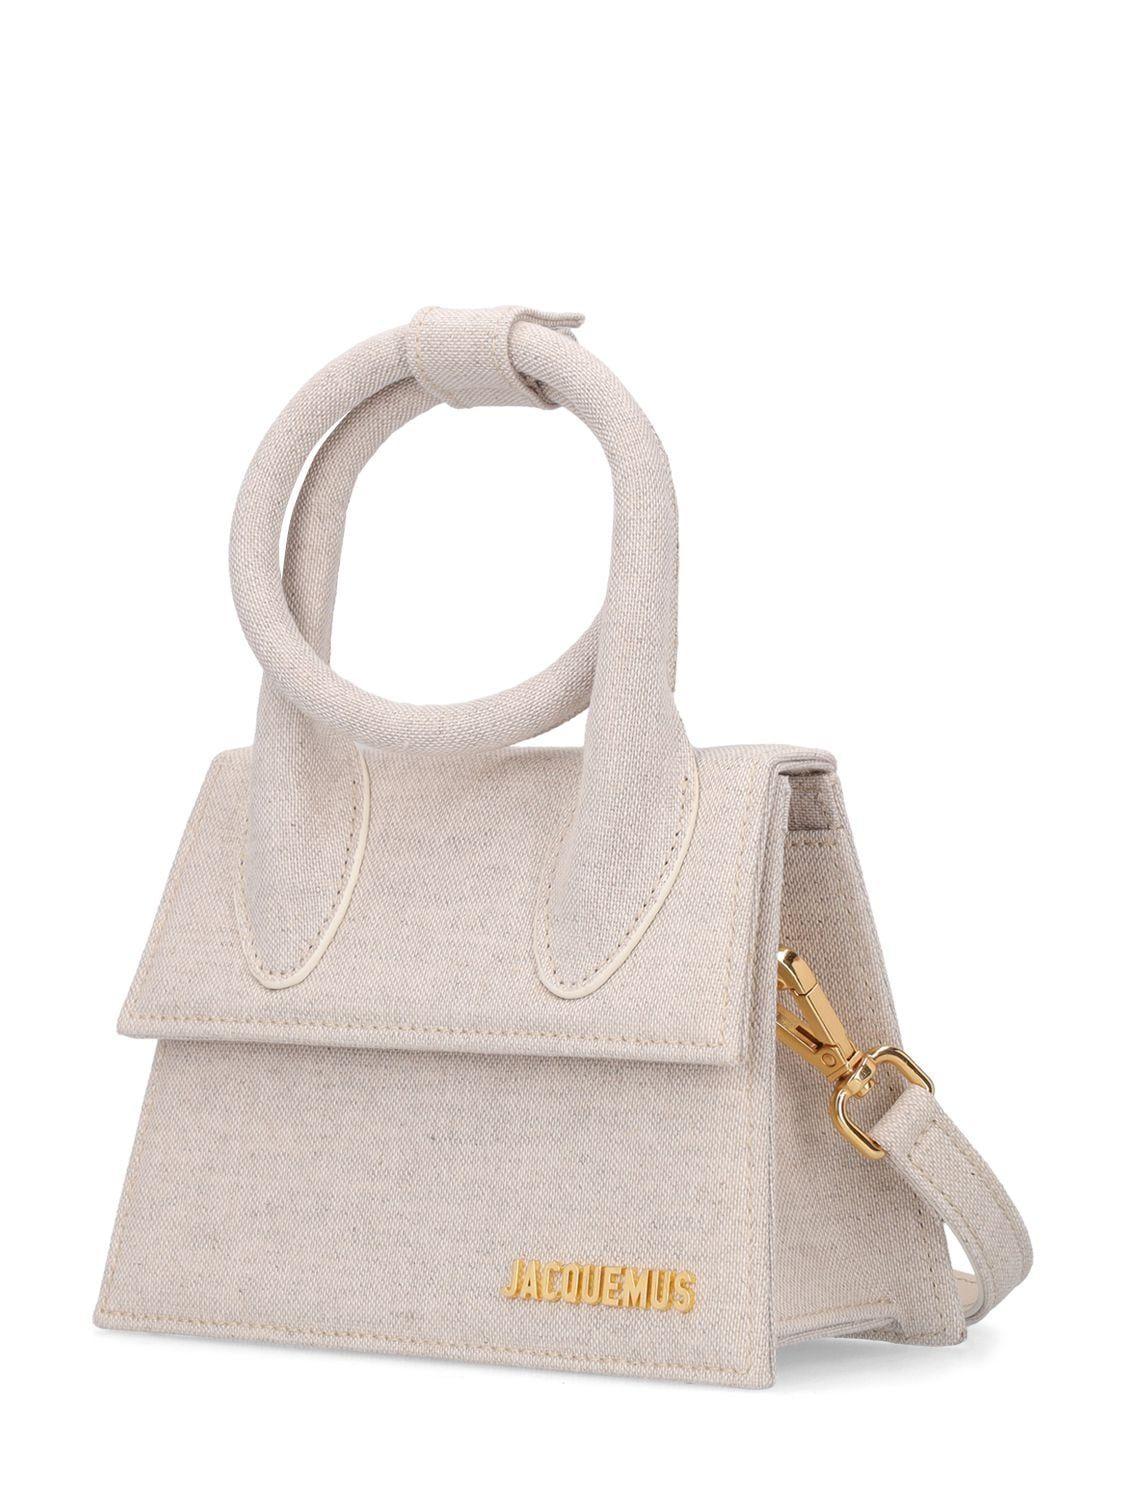 Chiquito handbag Jacquemus Grey in Cotton - 29448517